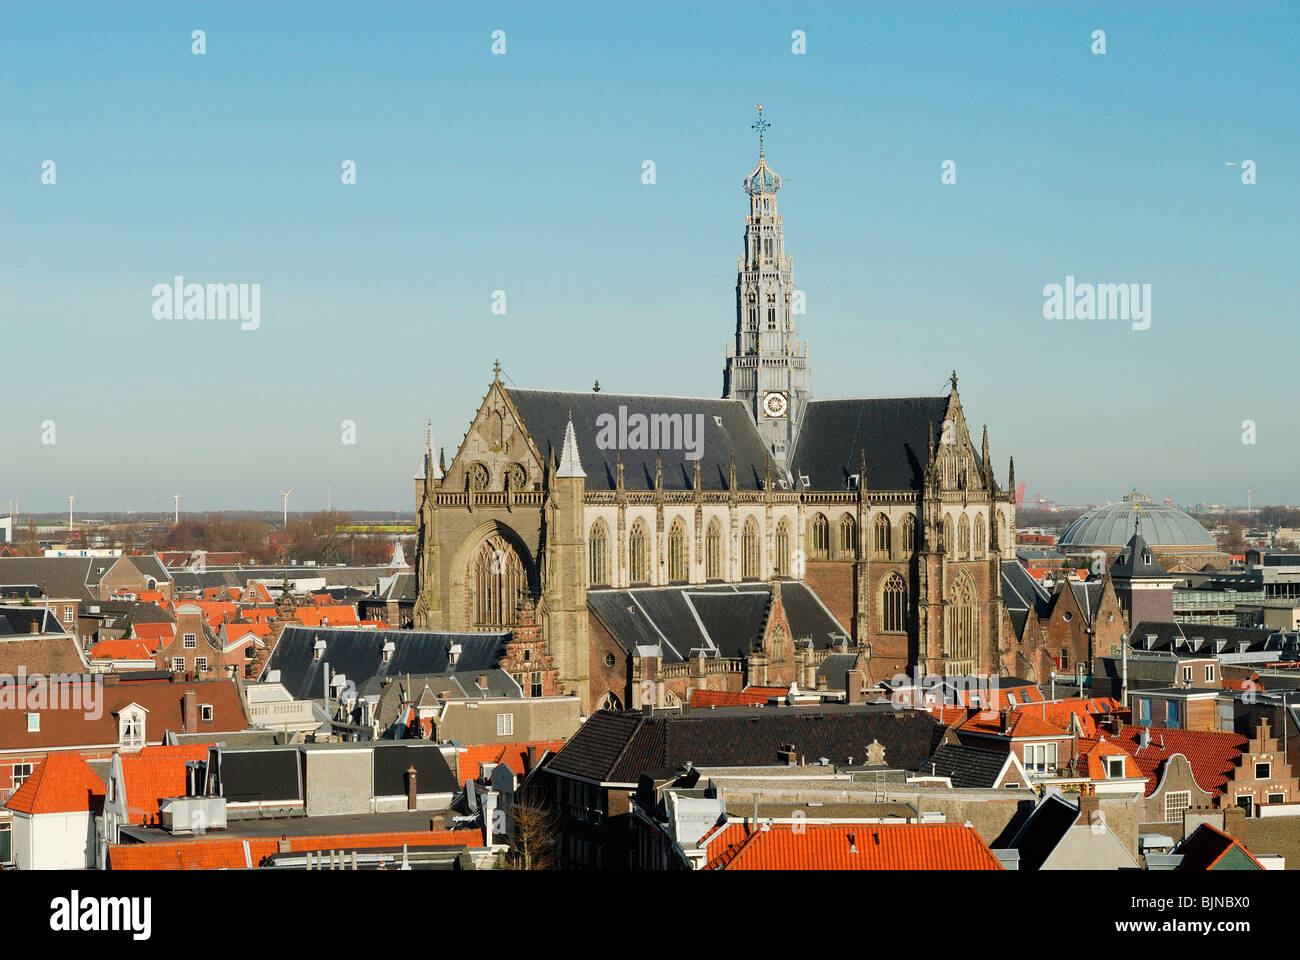 Église Saint-bavon sur le Grote Markt, à Haarlem Pays-Bas Banque D'Images